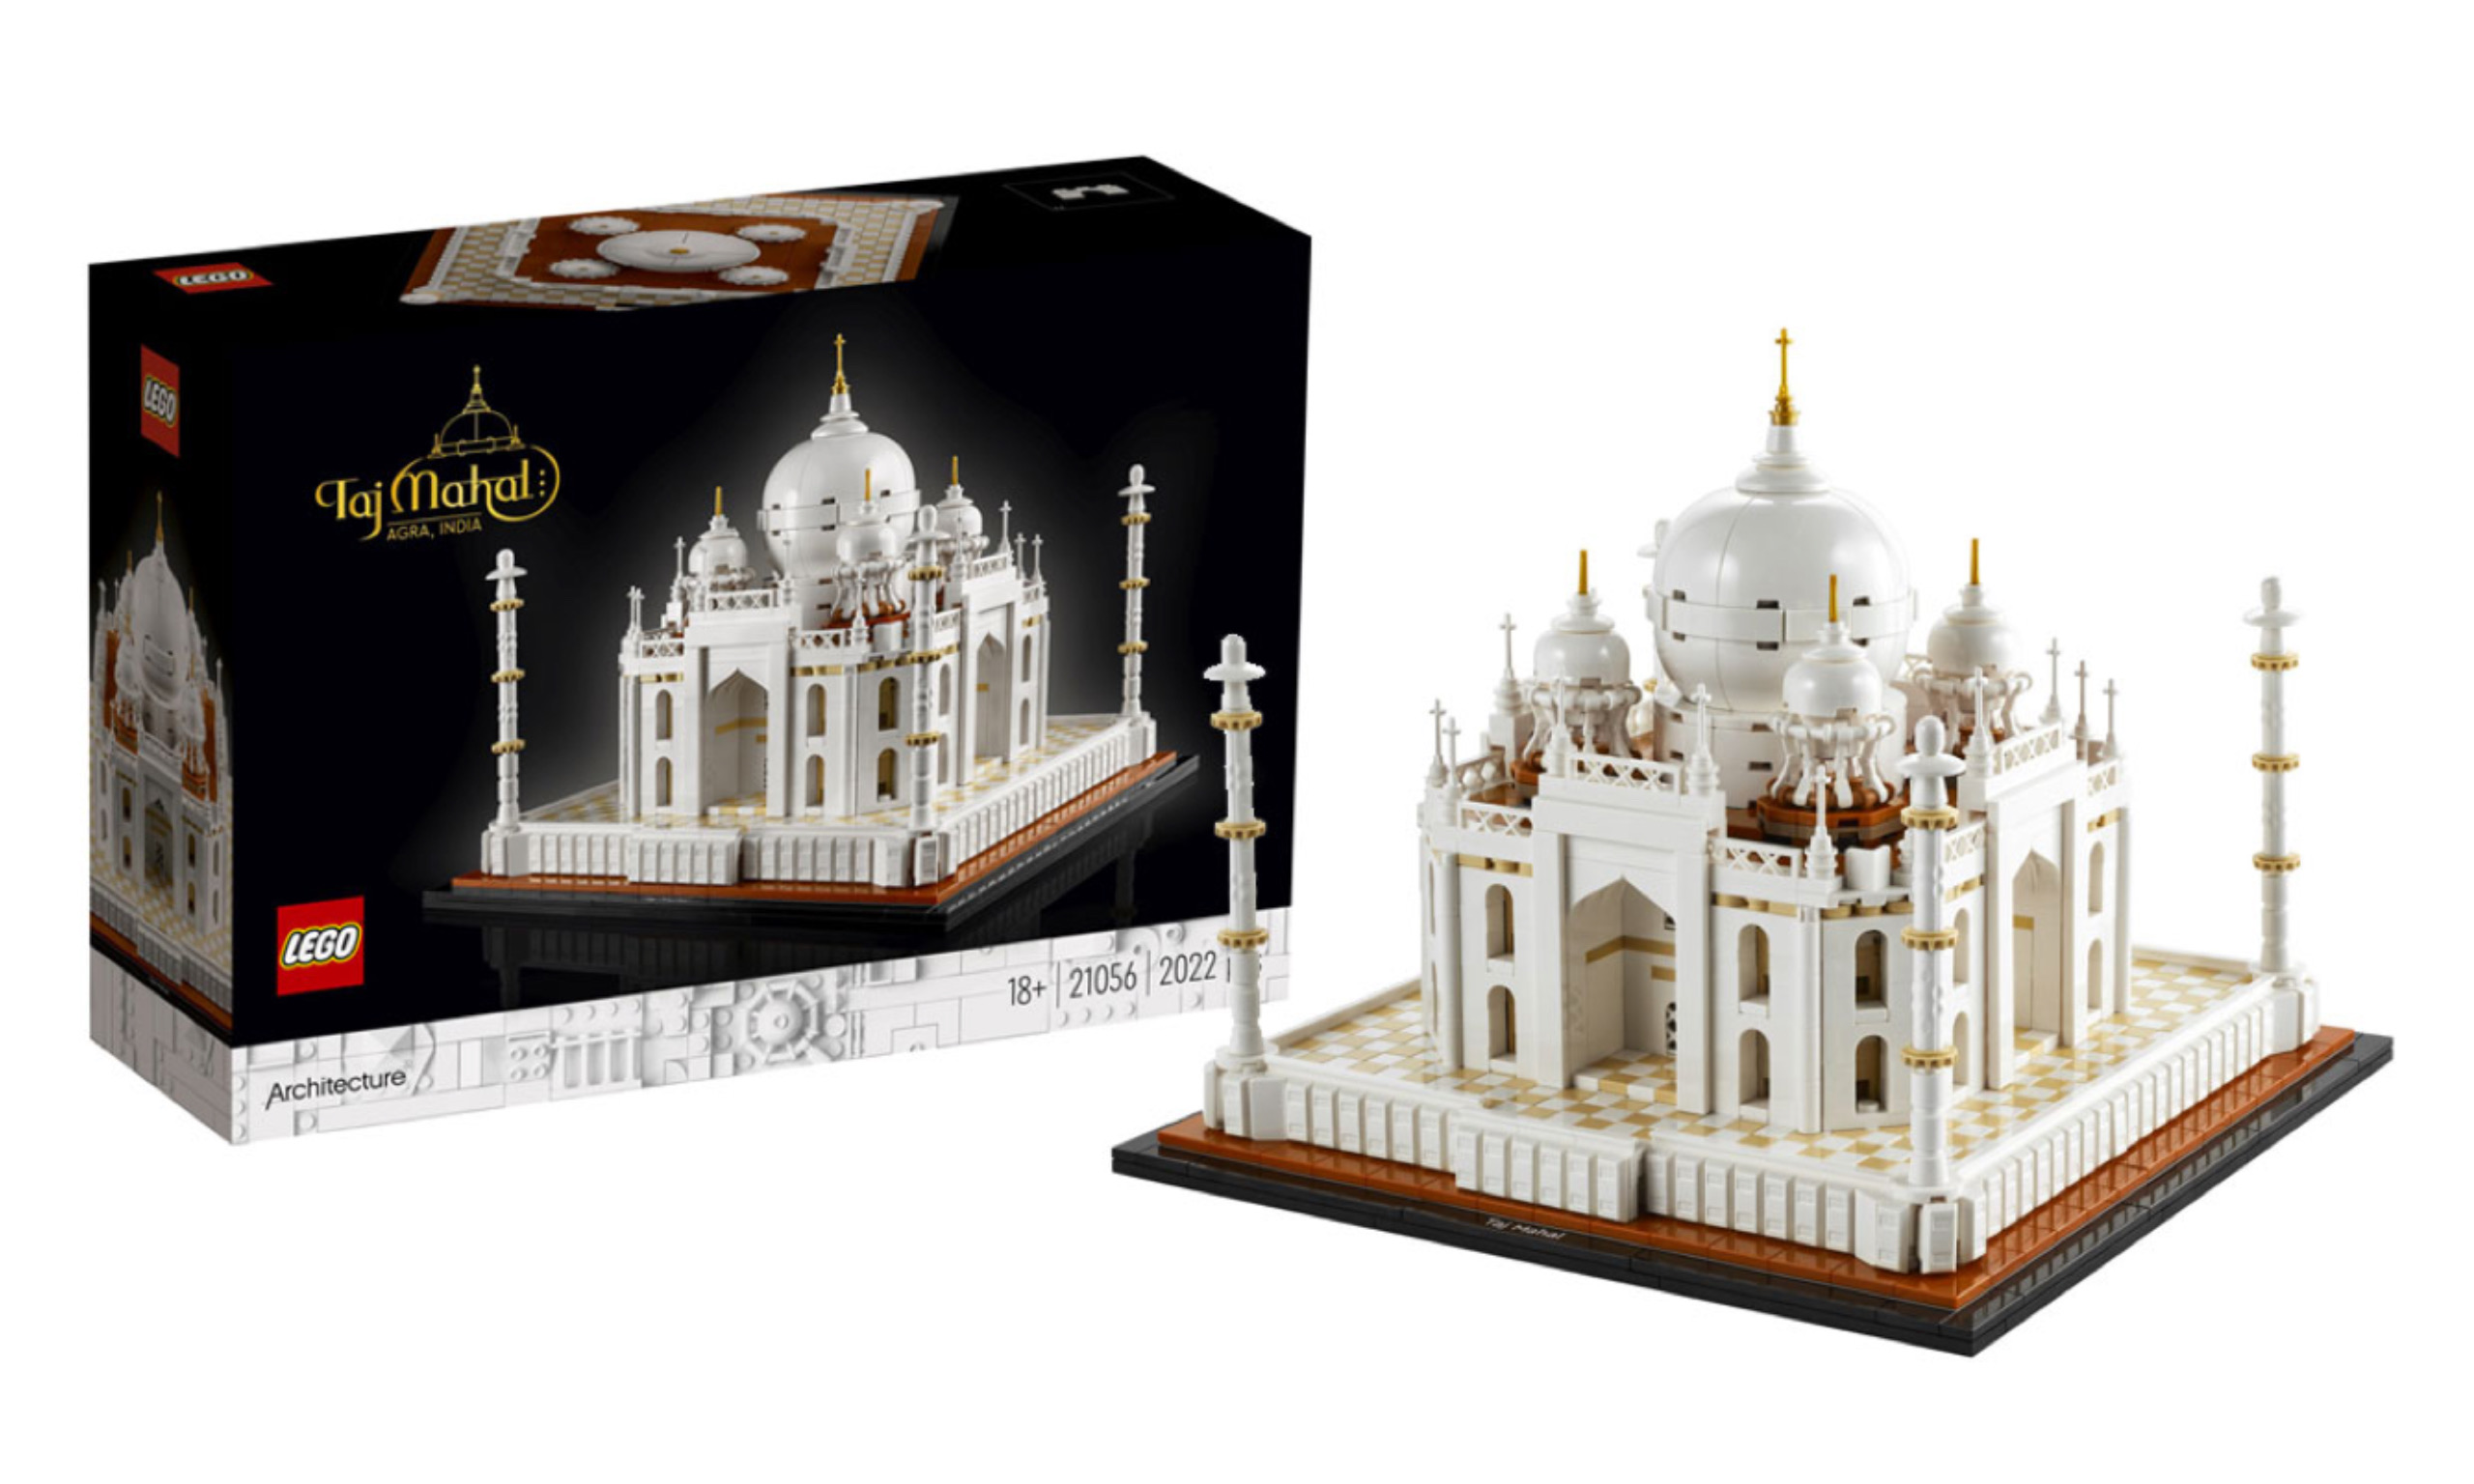 LEGO 建筑系列「泰姬陵」盒组释出